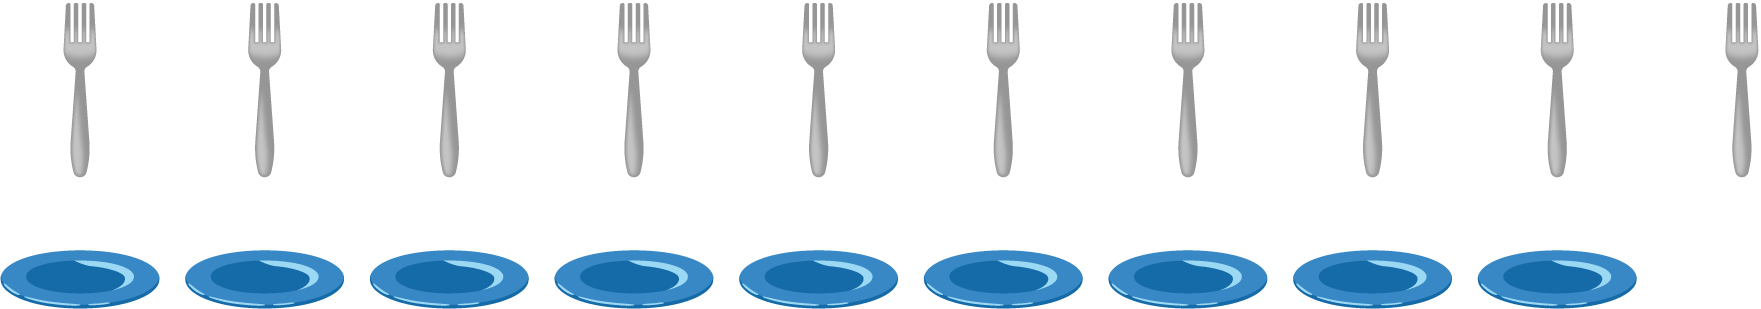 Forks, 10. Plates, 9.